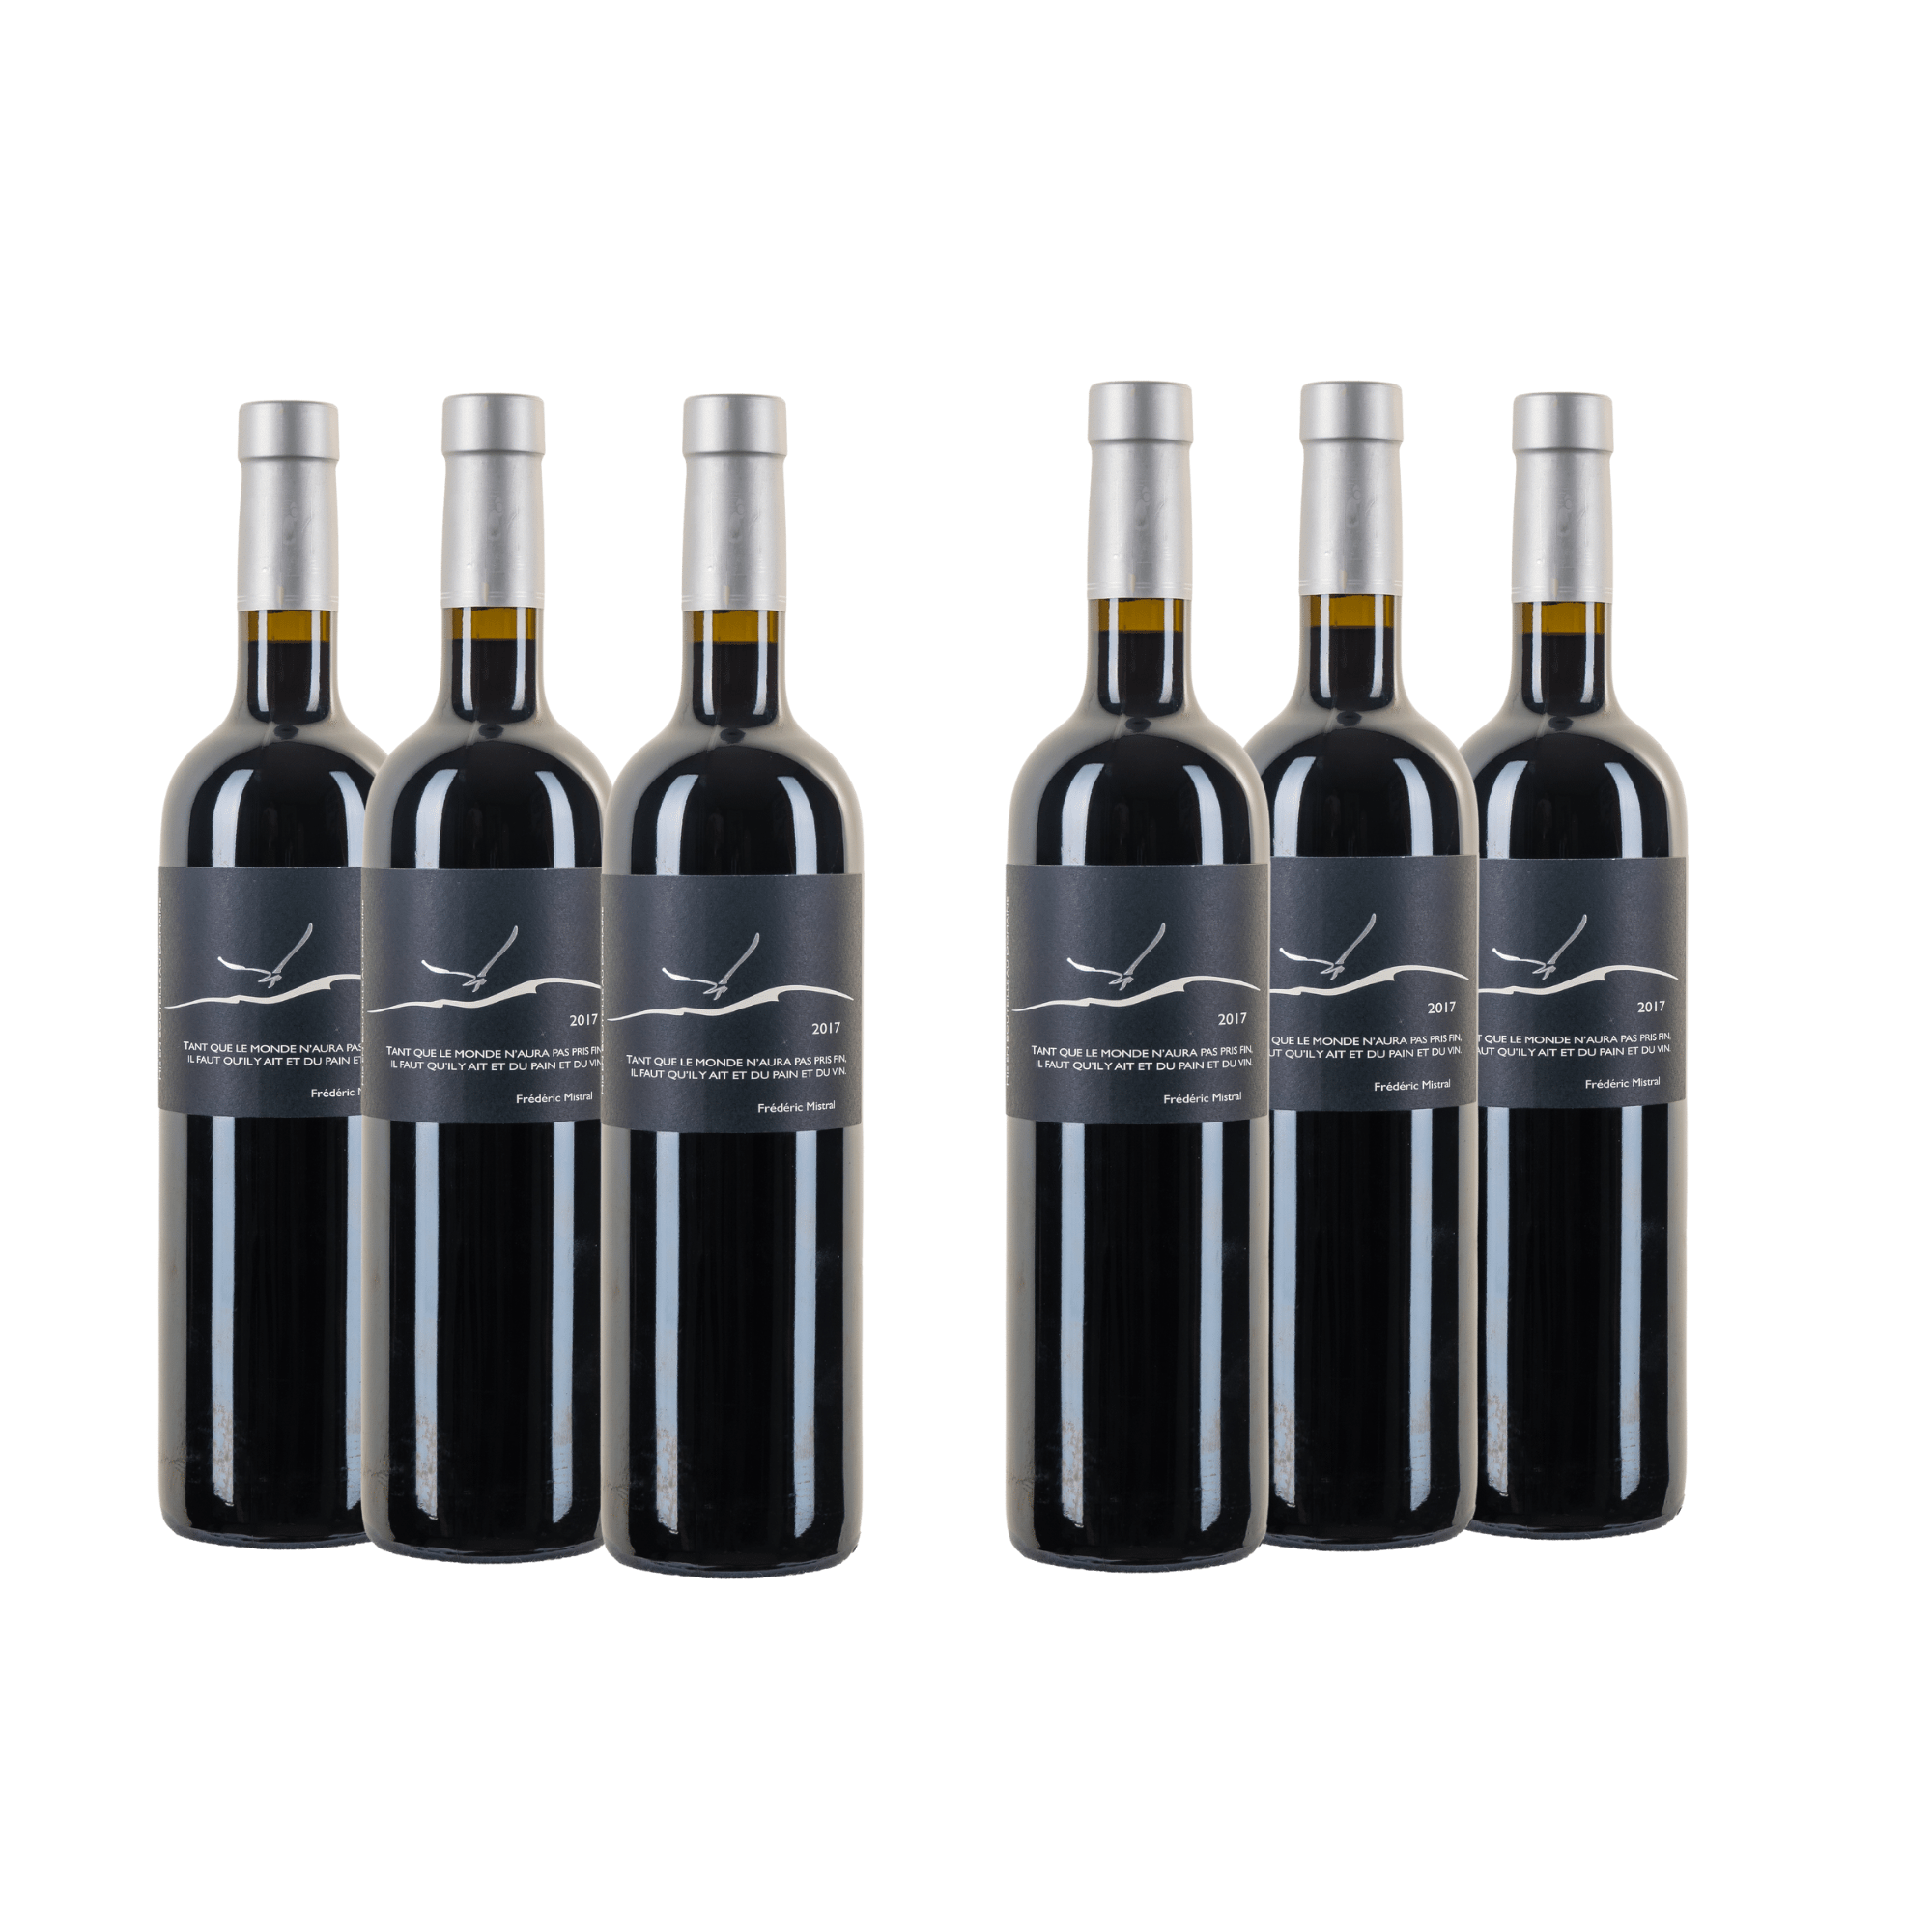 DOMAINE DE BELLEVISTE - Vin de France de la vallée des Beaux de Provence - 50% Cabernet Sauvignon et 50% Syrah - 6 bouteilles